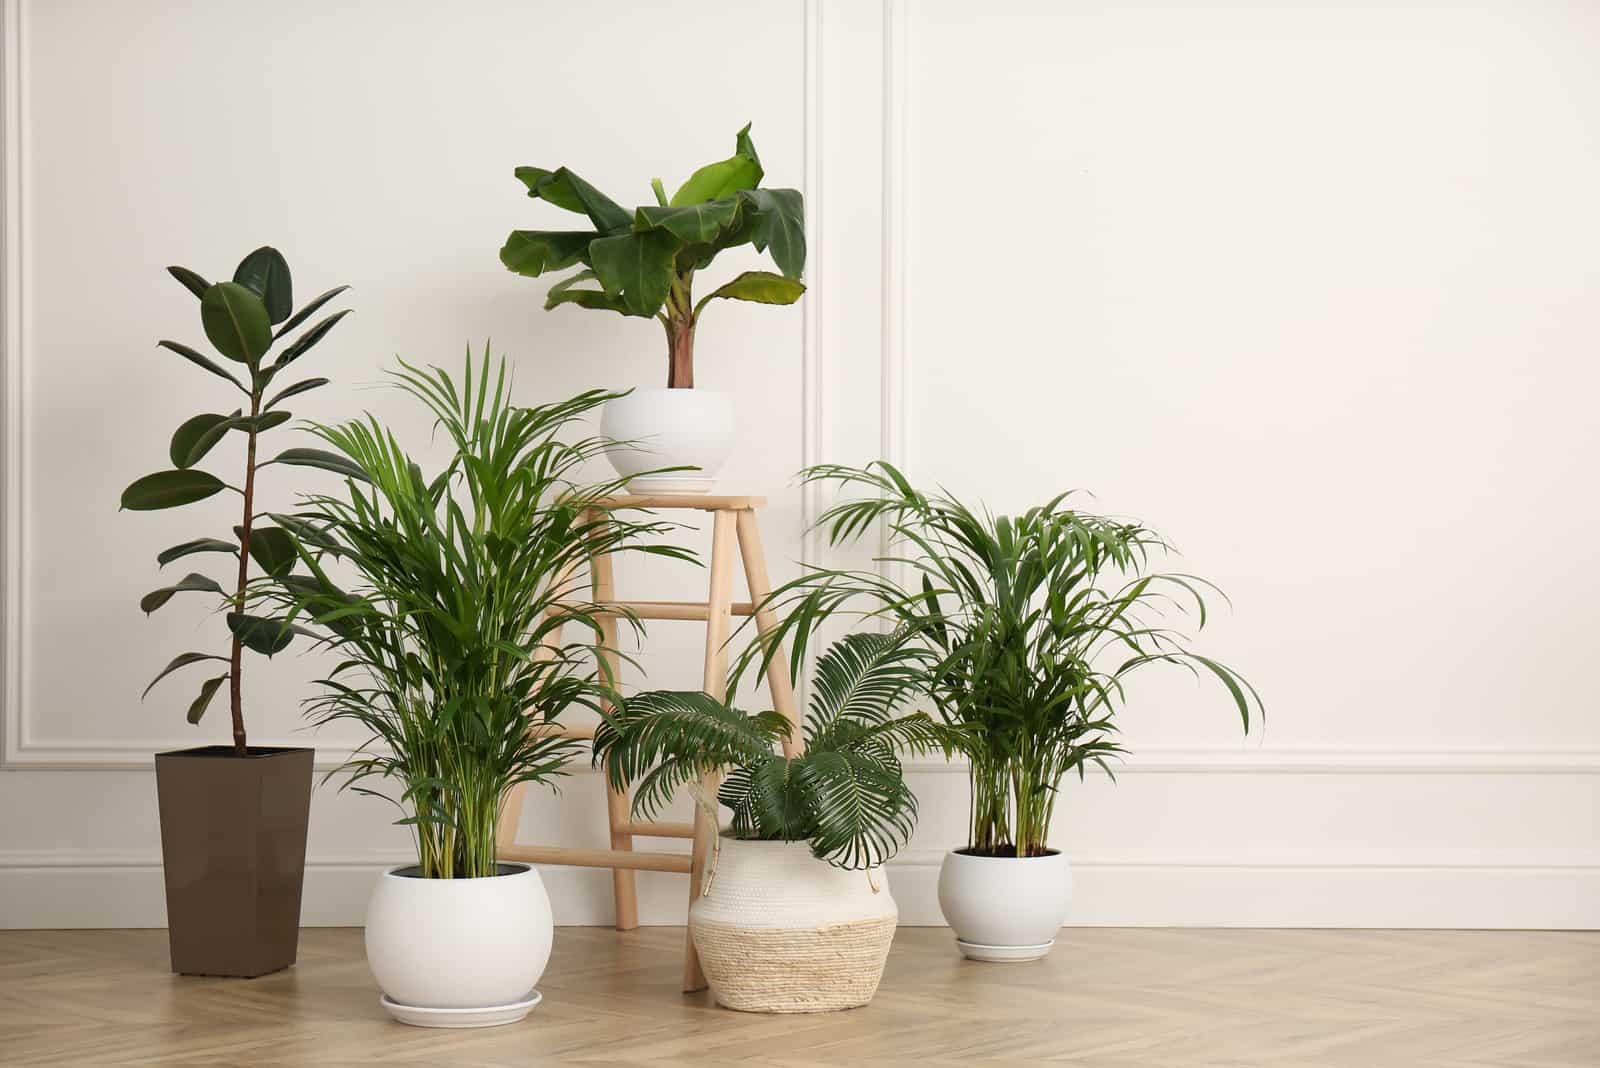 indoor plants in pots on floor